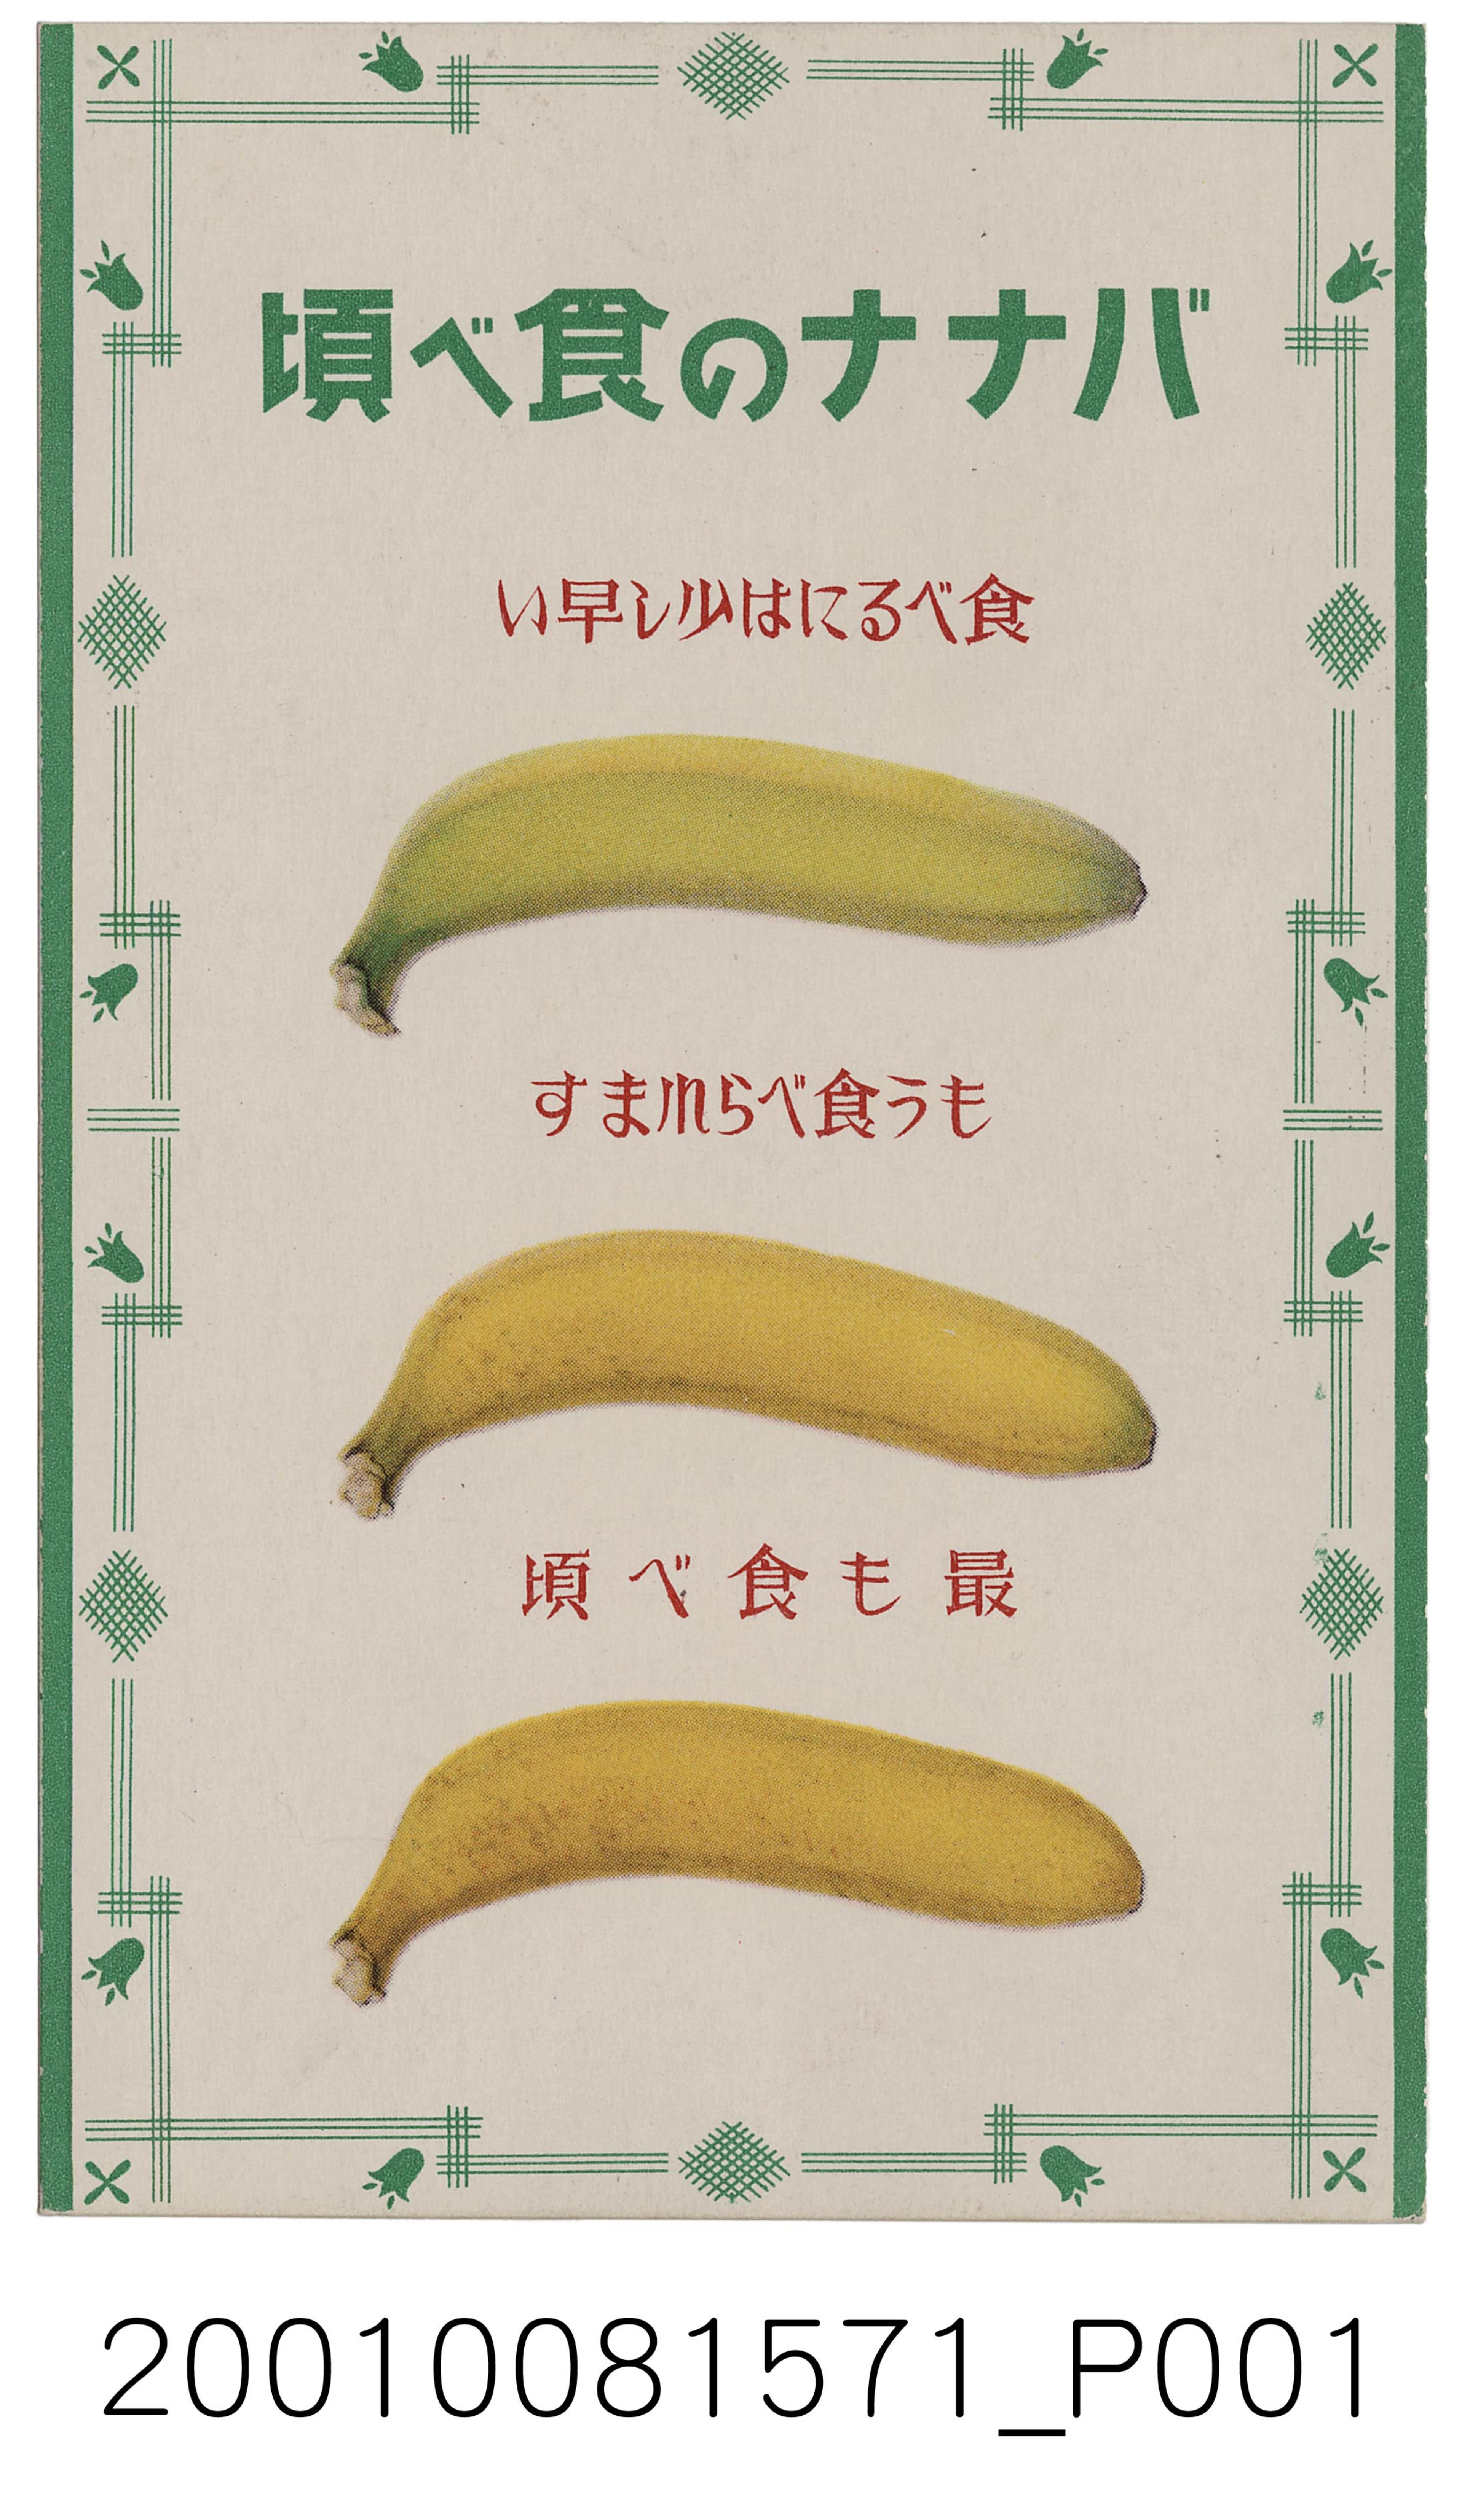 大日本印刷株式會社印刷香蕉食用時機 (共2張)